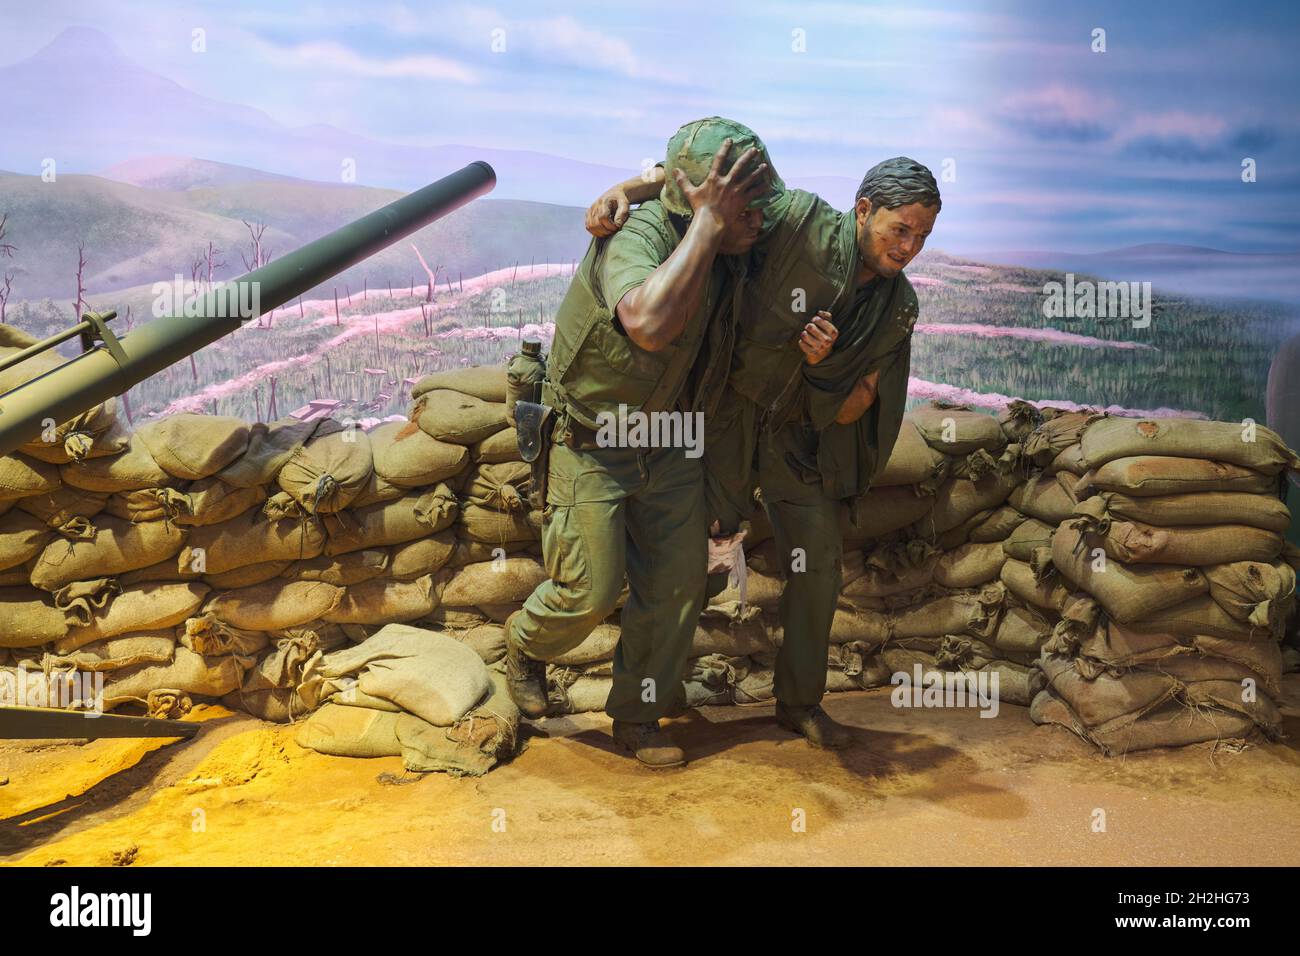 Ein Soldat hilft, einen verletzten, verletzten Kameraden während des Vietnamkrieges zu evakuieren.im National Museum of the Marine Corps Heritage Center in Virginia. Stockfoto